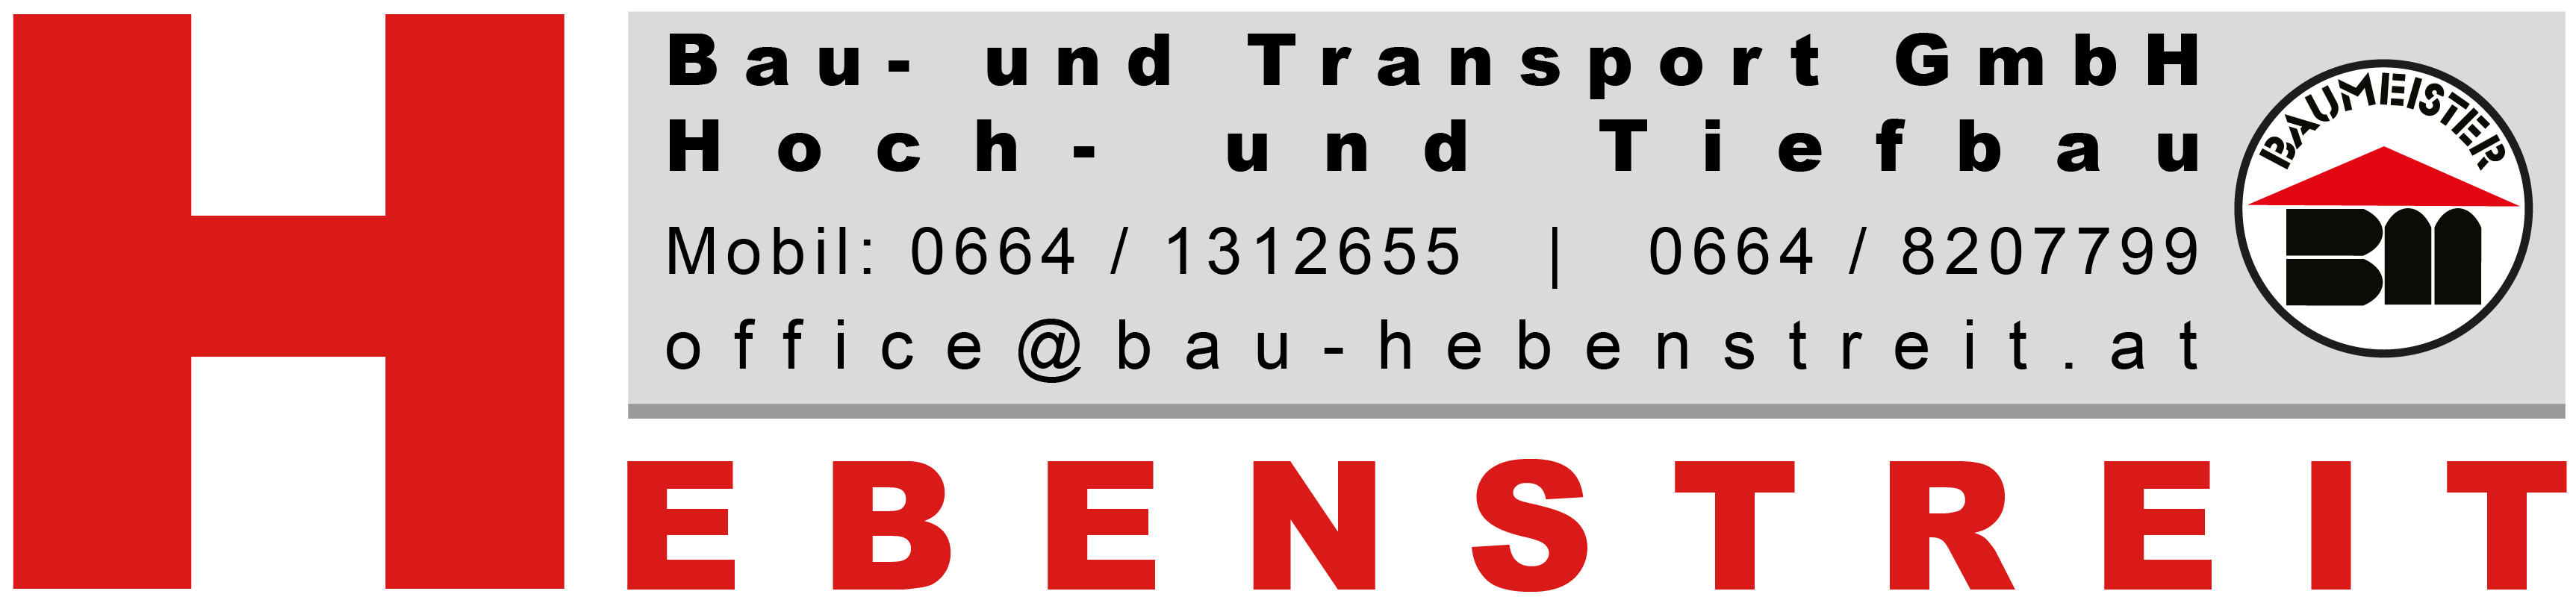 Hebenstreit, Bau und Transport GmbH